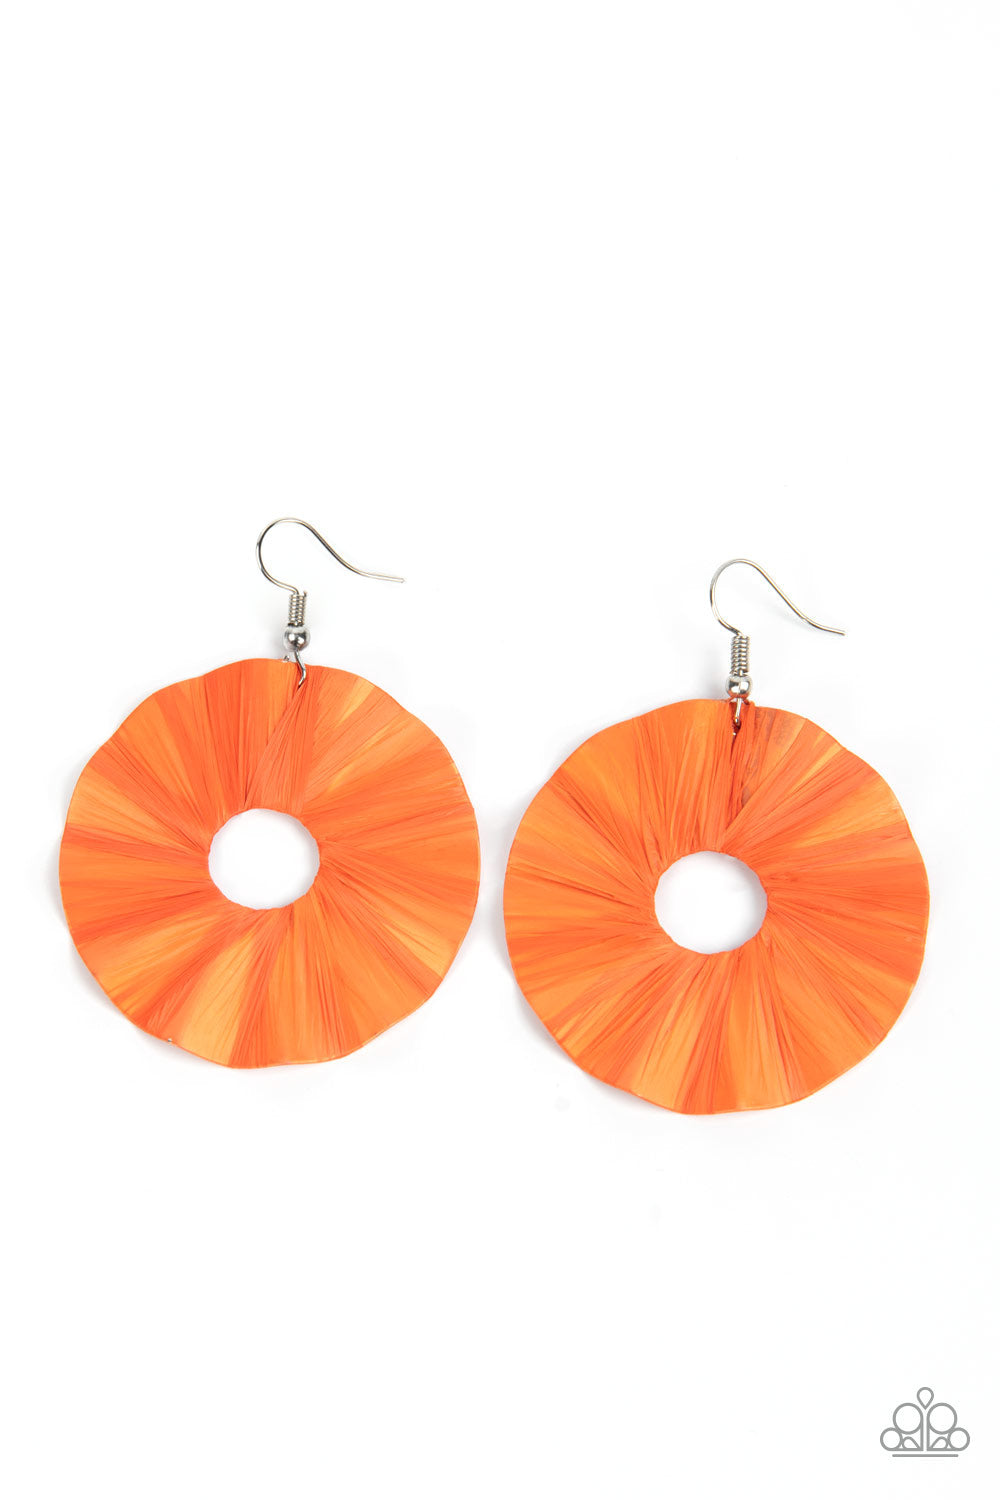 Paparazzi Accessories - Fan the Breeze #E584 - Orange Earrings